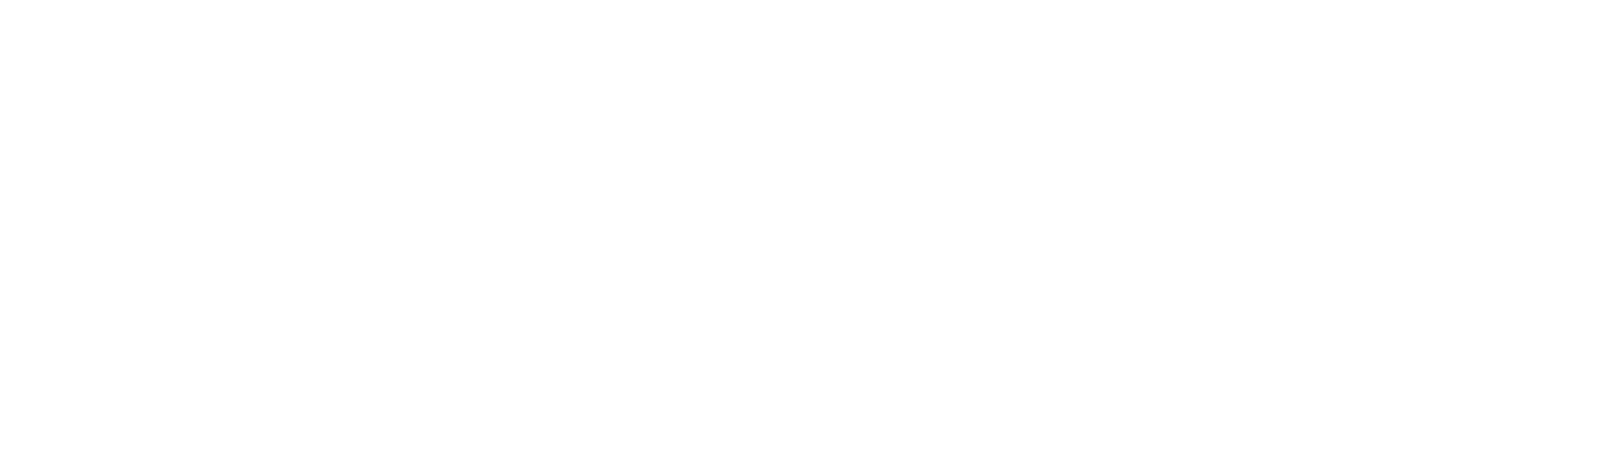 Sonendo Logo groß für dunkle Hintergründe (transparentes PNG)